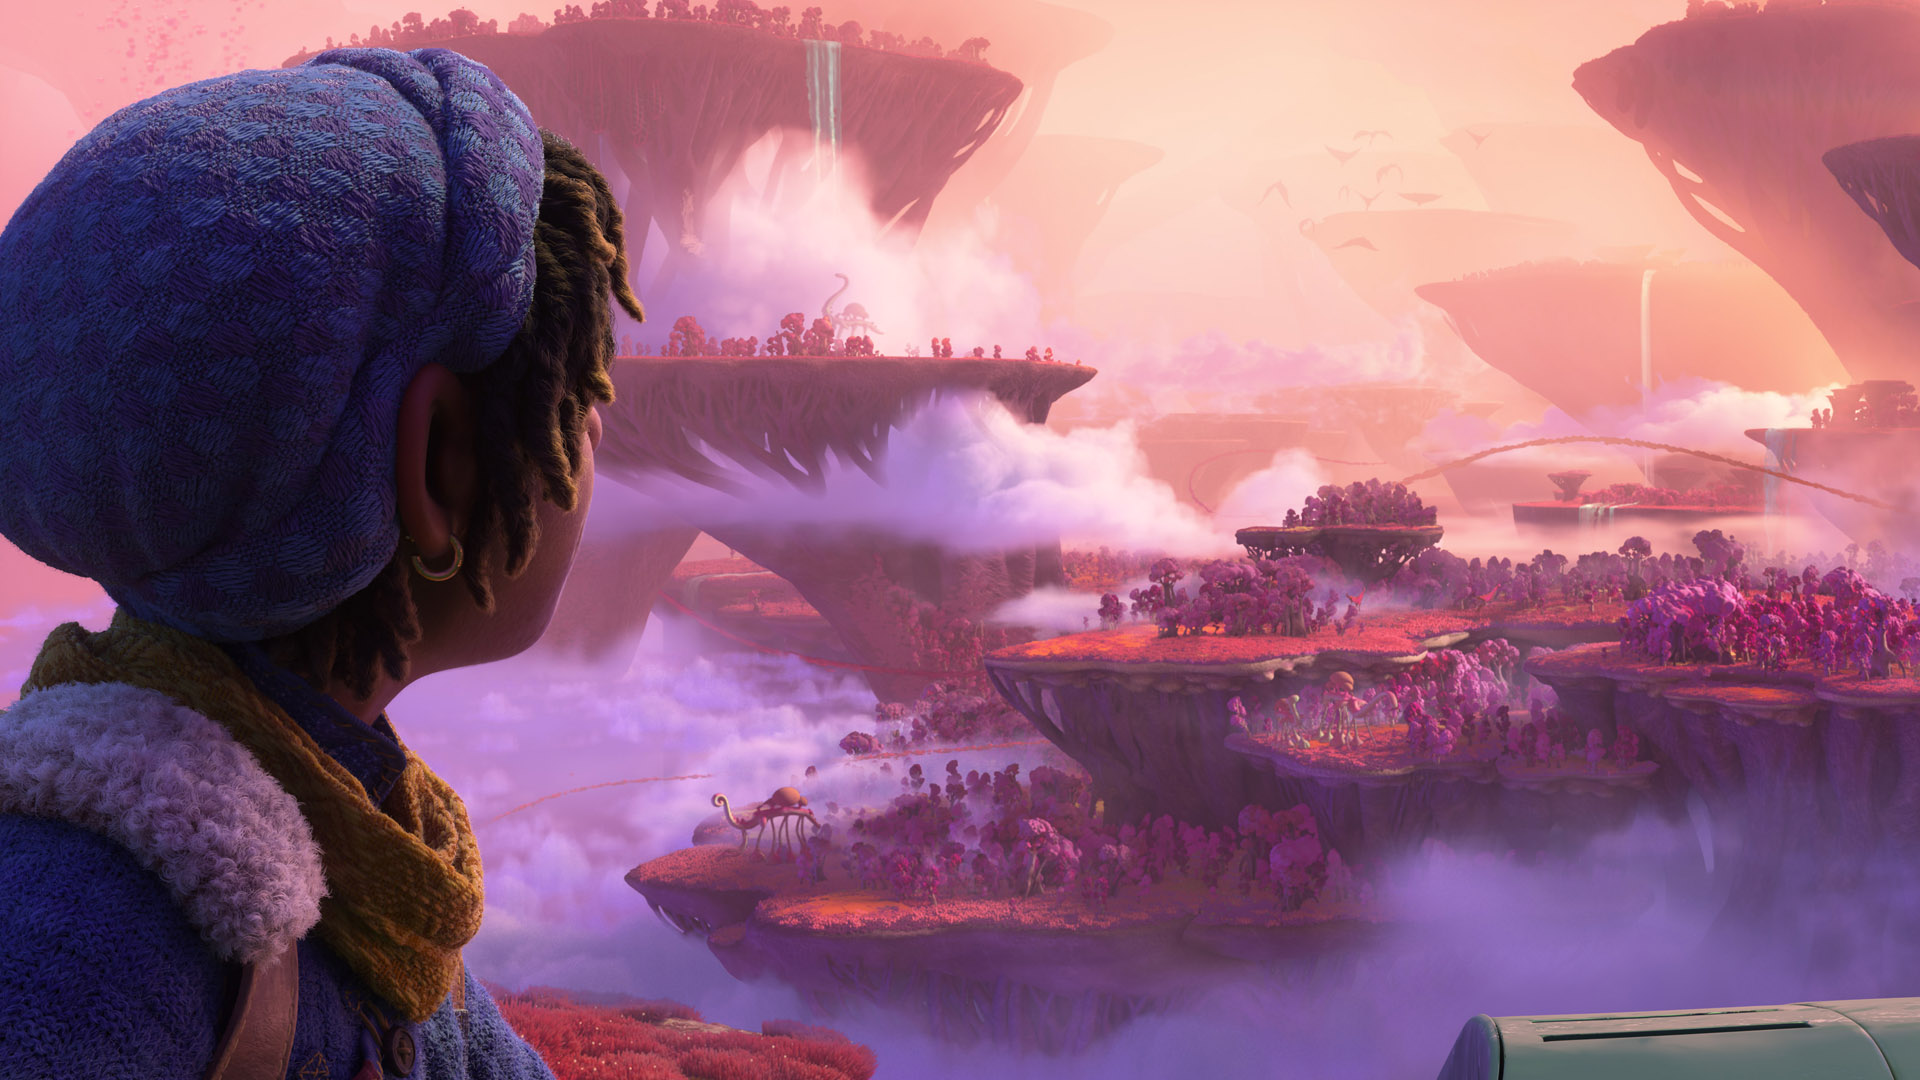 Ethan si affaccia sul titolo Strange World nel film Disney del 2022 con lo stesso nome